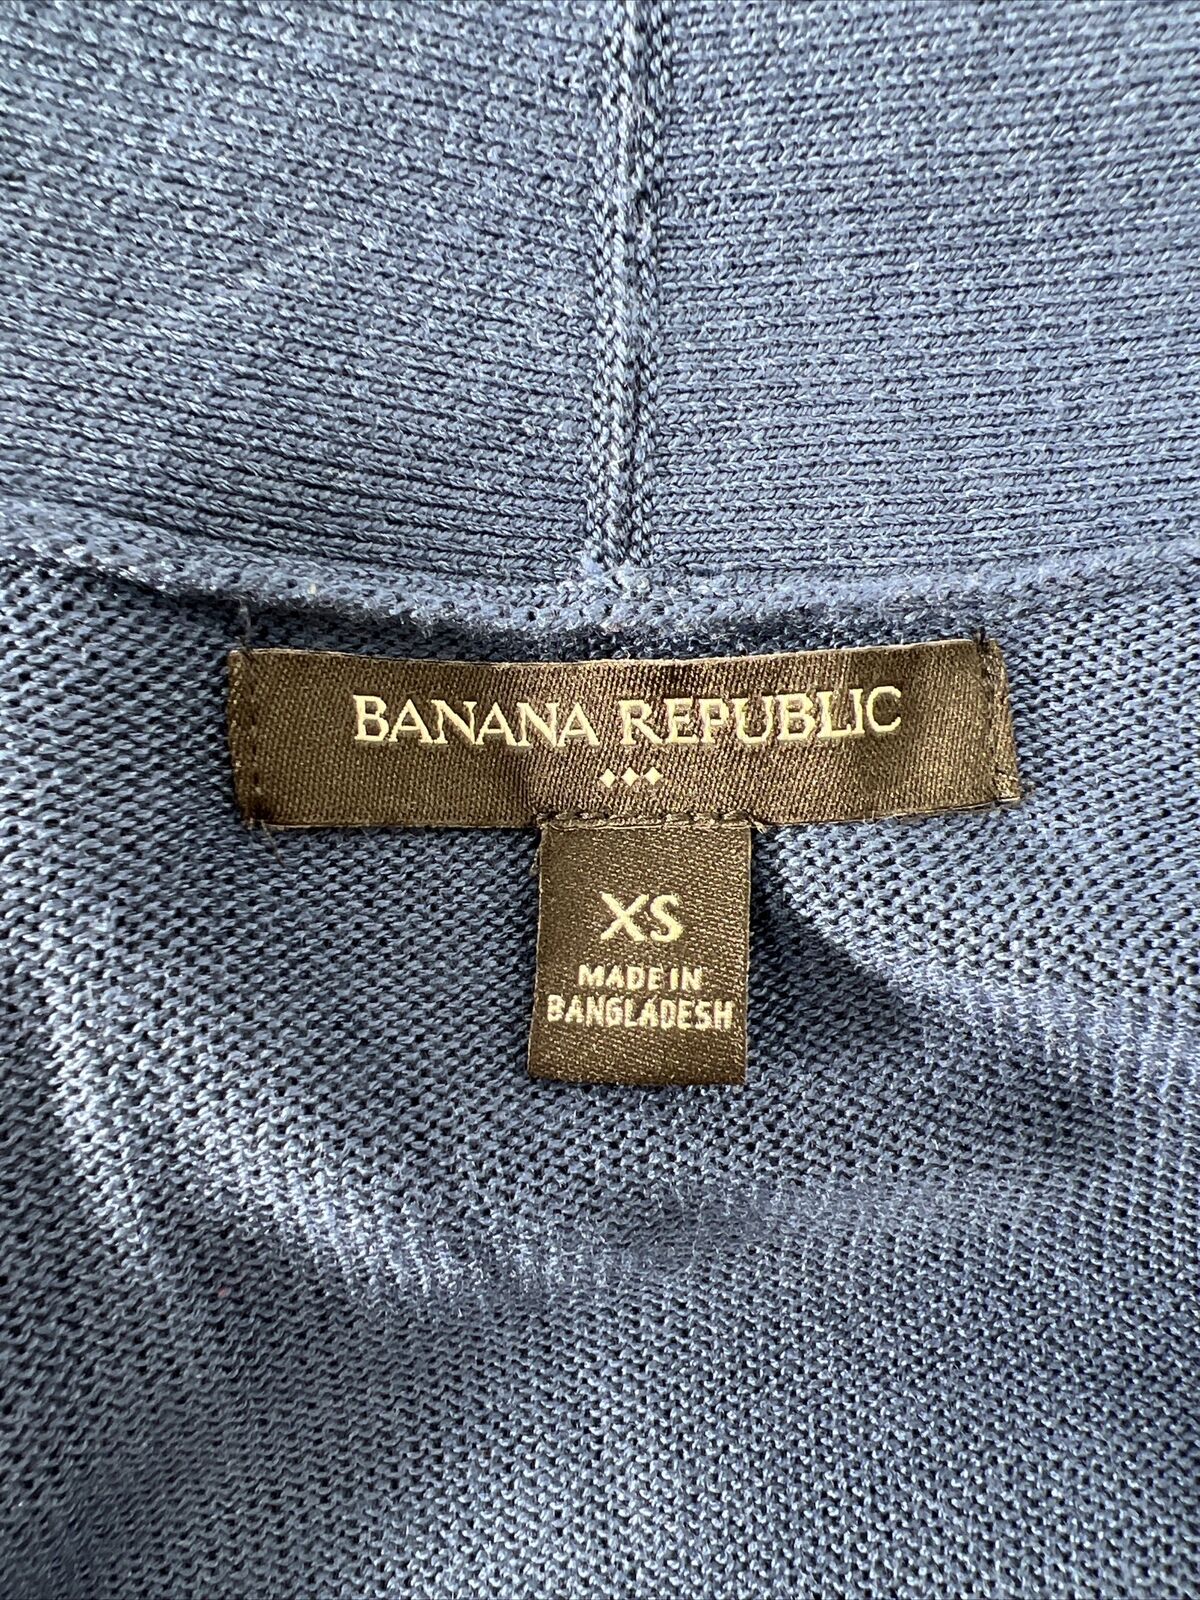 Banana Republic Suéter tipo cárdigan largo azul para mujer - XS